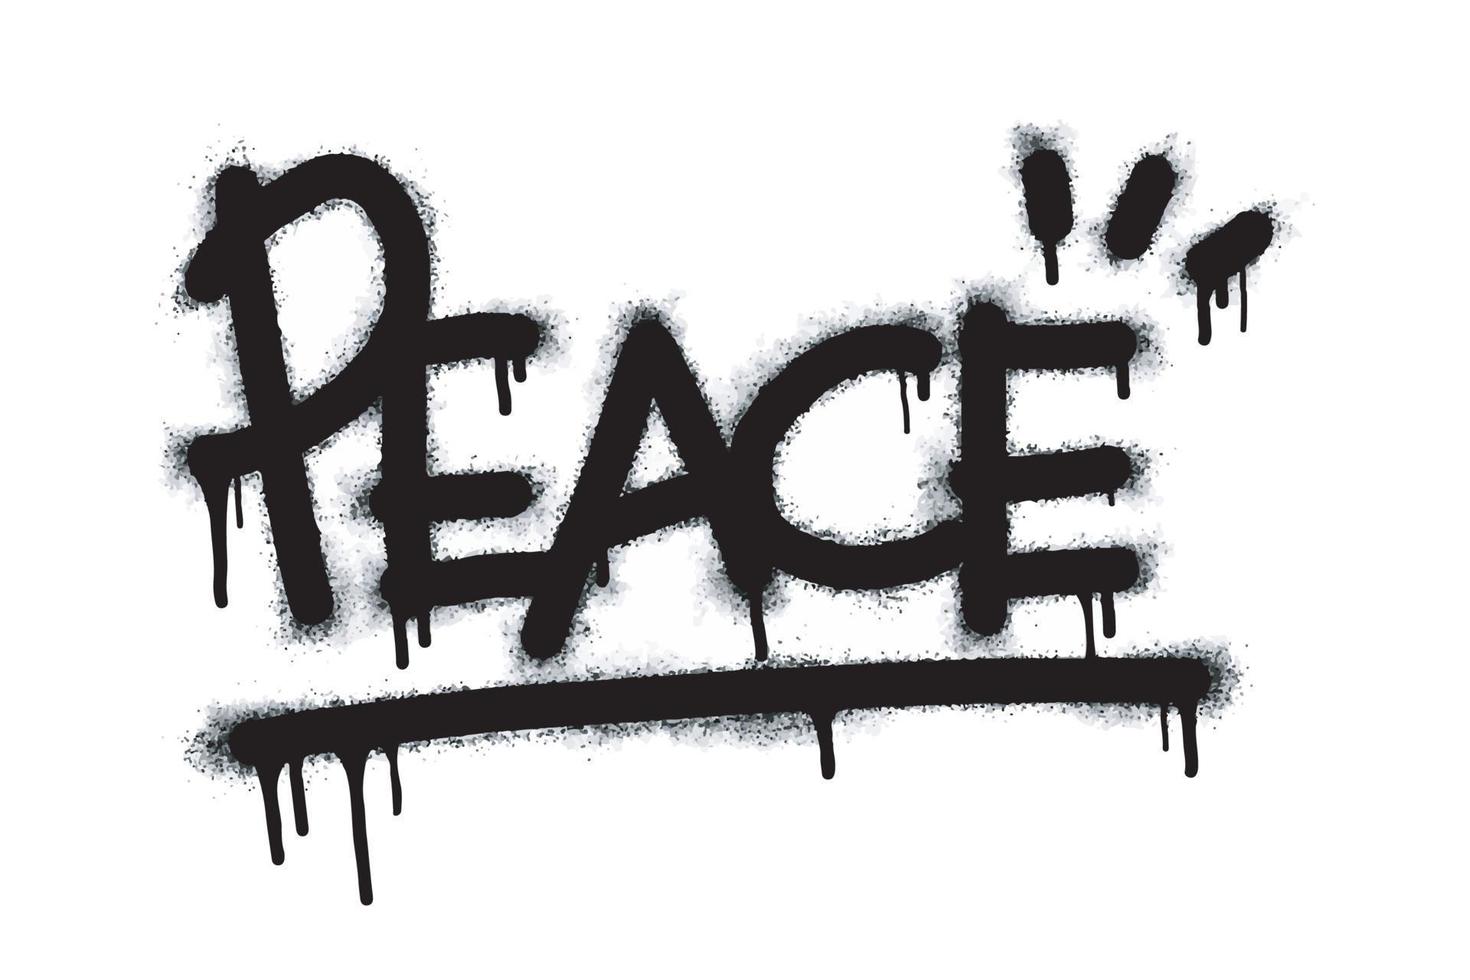 Graffiti-Friedenssymbol in Schwarz auf Weiß sprühen. gesprühte Tropfen des Friedenssymbol-Logos. isoliert auf weißem Hintergrund. Vektor-Illustration vektor